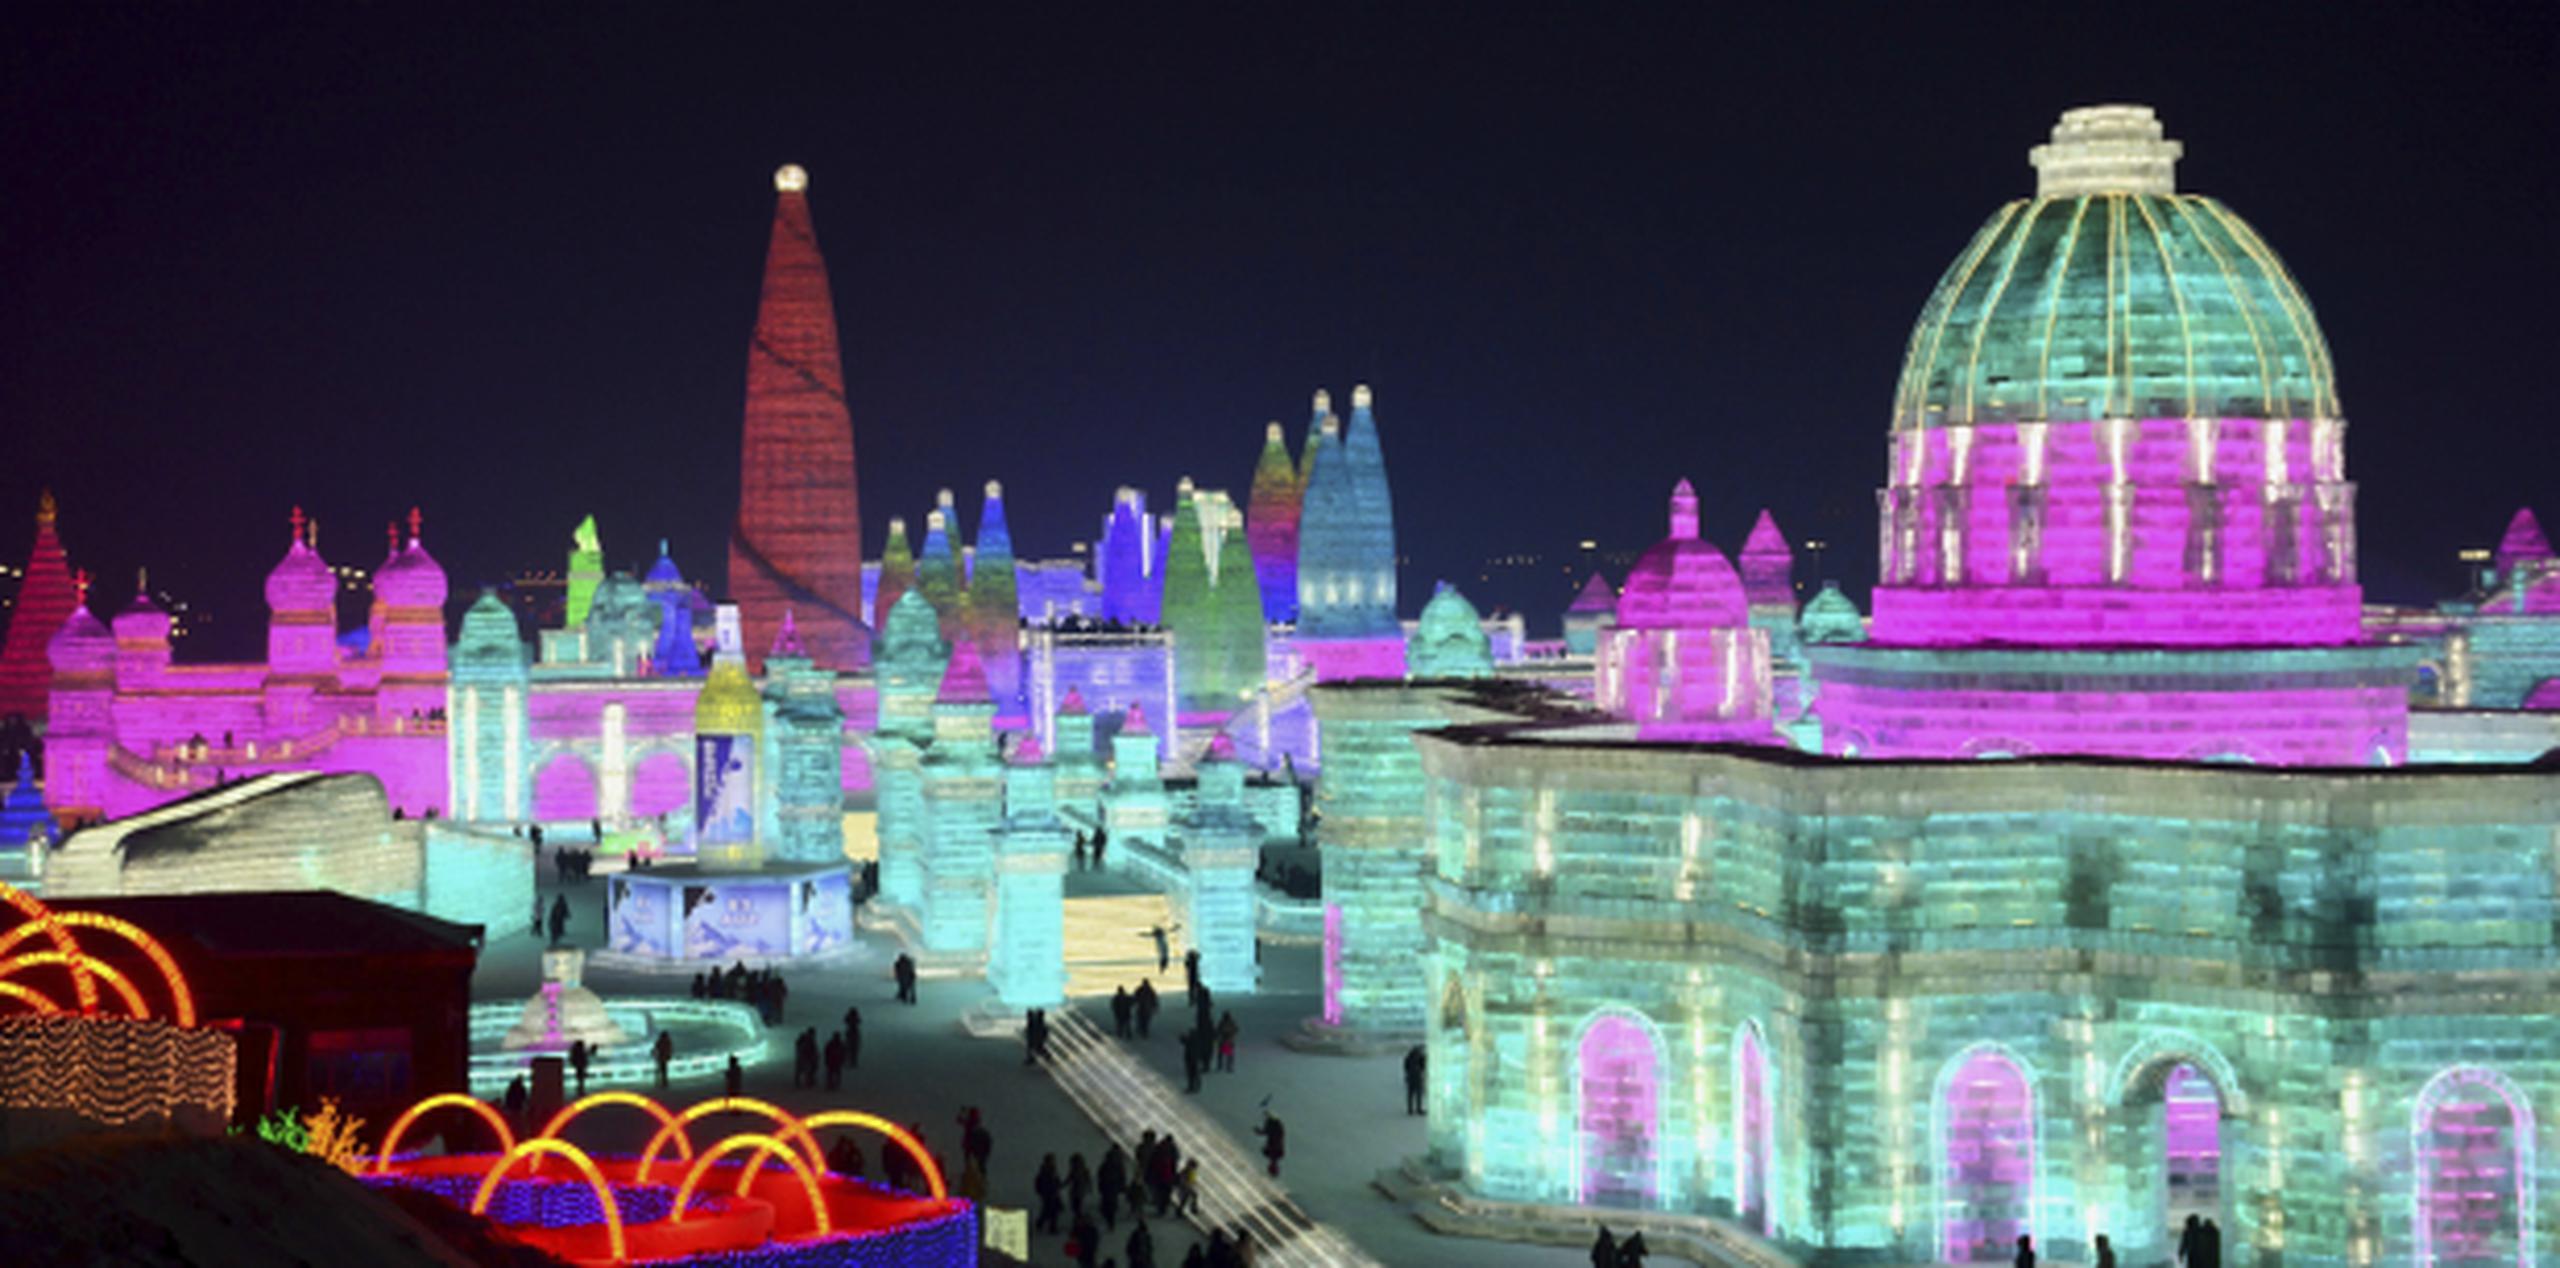 El Harbin Ice-Snow World, reúne más de 2,000 esculturas creadas con 180,000 metros cúbicos (240.000 yardas cúbicas) de hielo recogido del río Songhua por casi un millar de trabajadores. (AP)